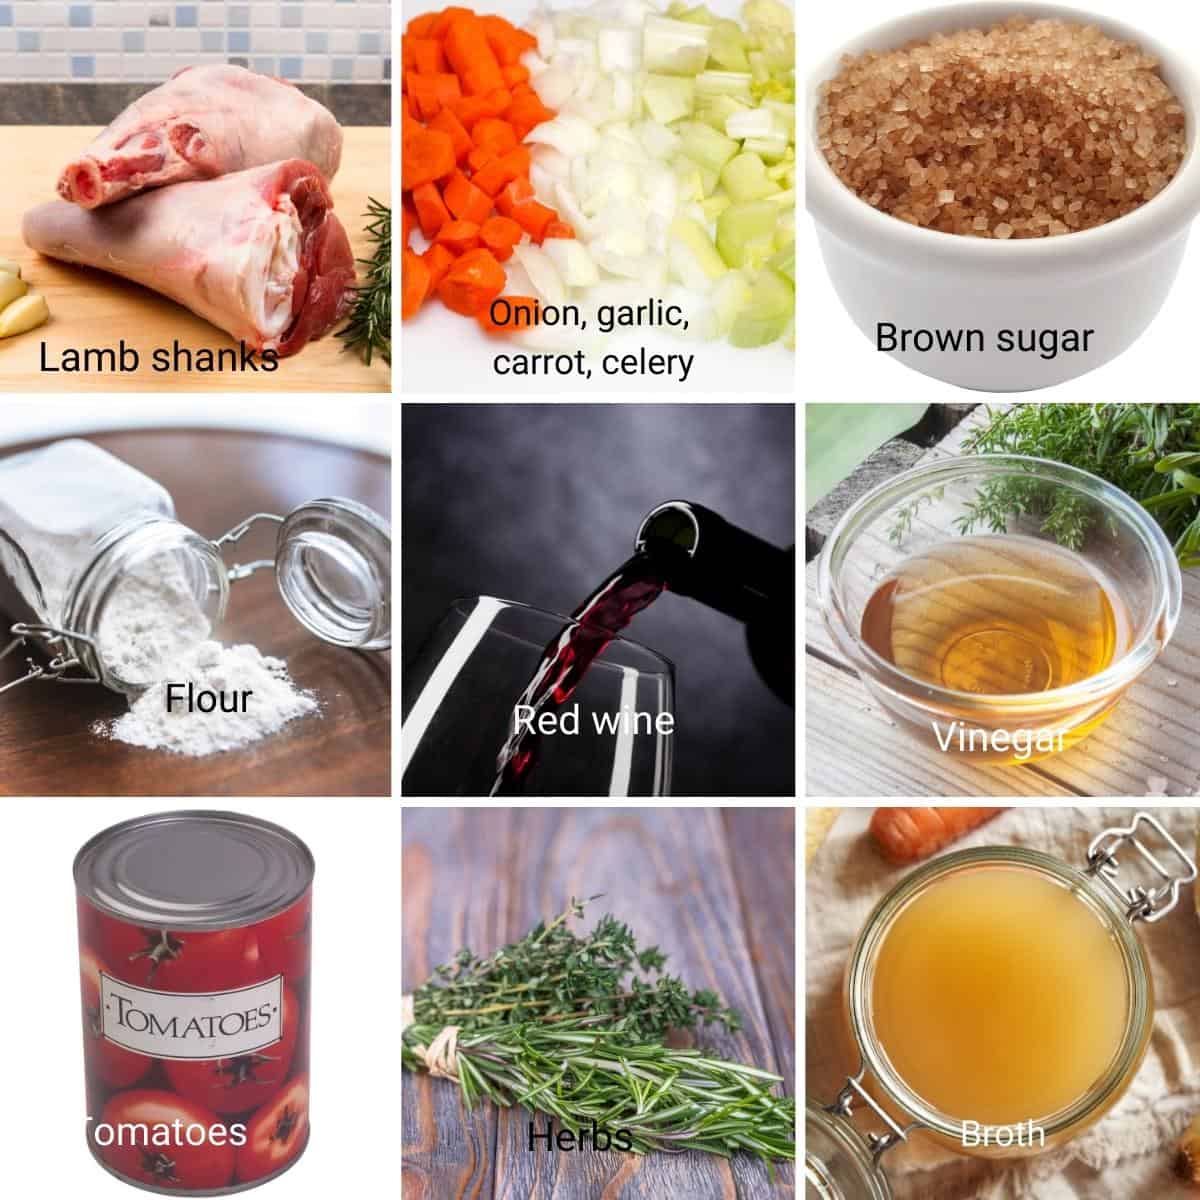 Ingredients for making lamb shanks.